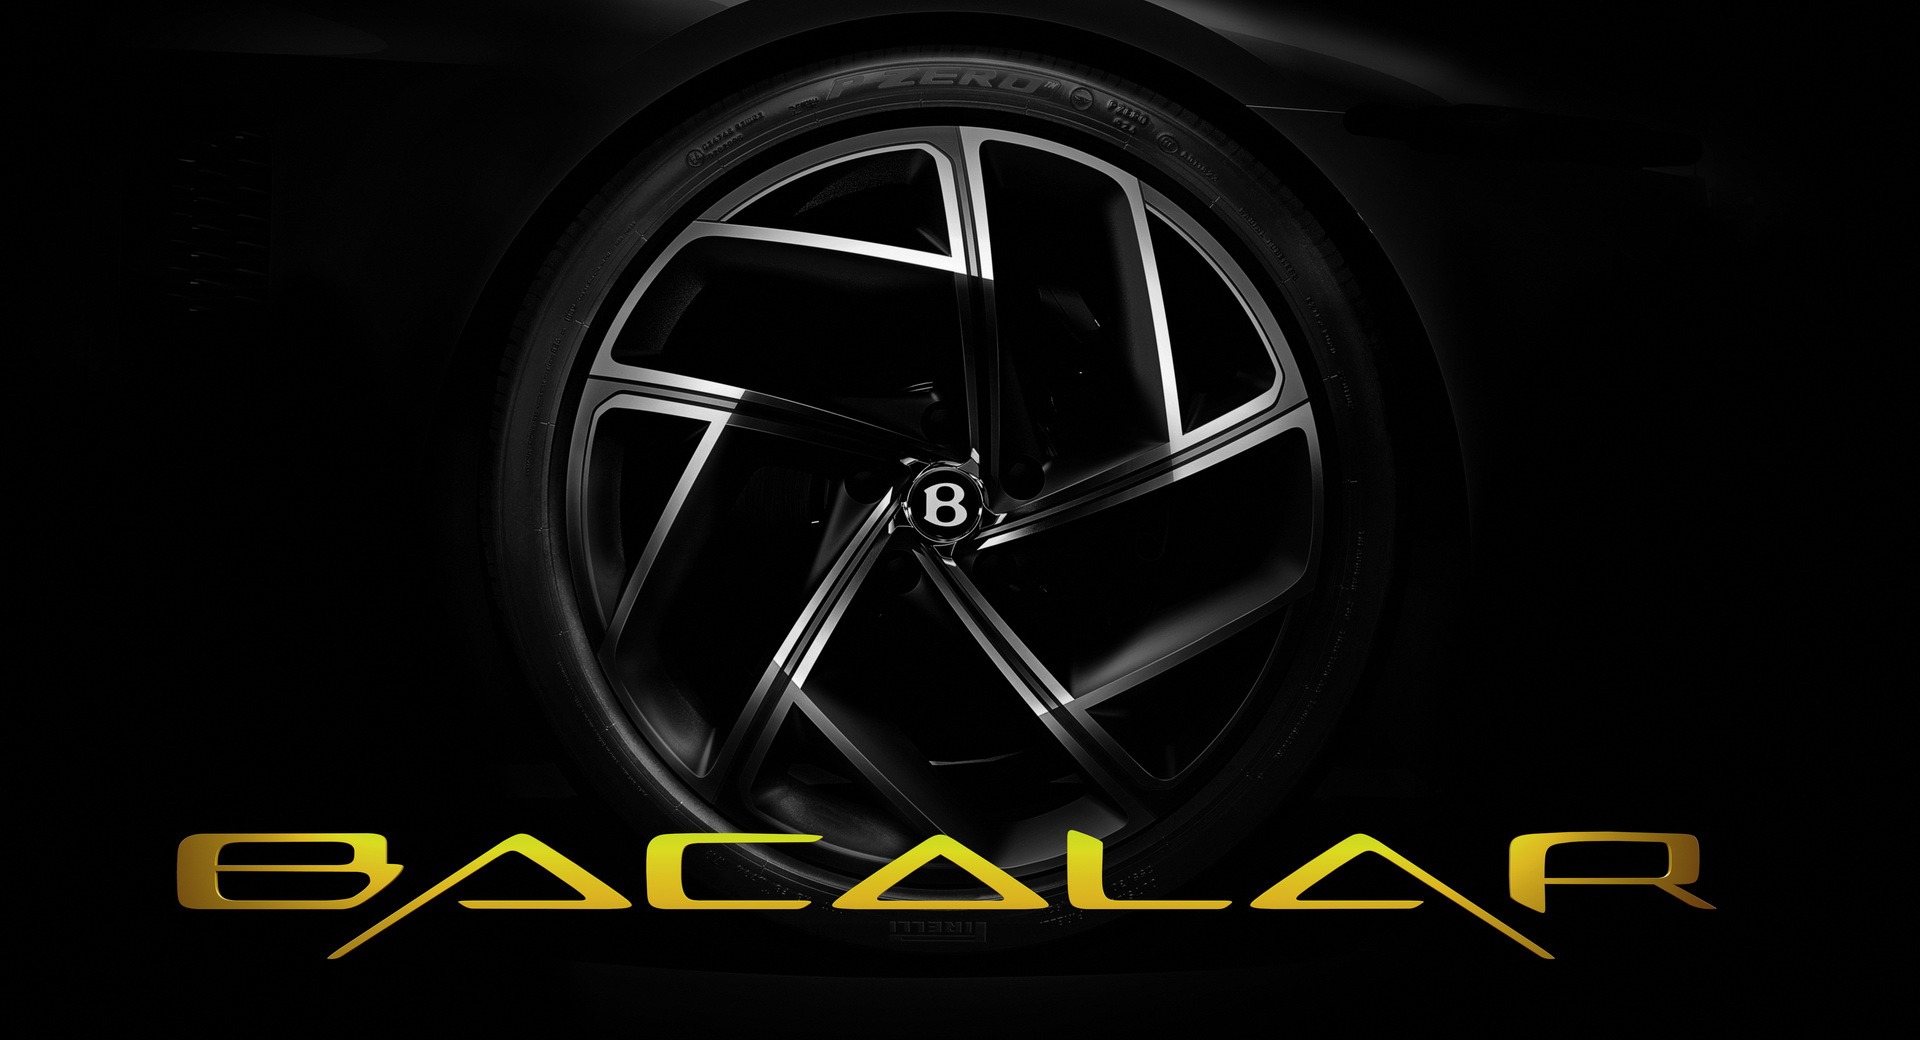 Bentley Bacalar - Siêu phẩm giá không dưới 2 triệu đô kheo nội thất sang xịn - Ảnh 2.